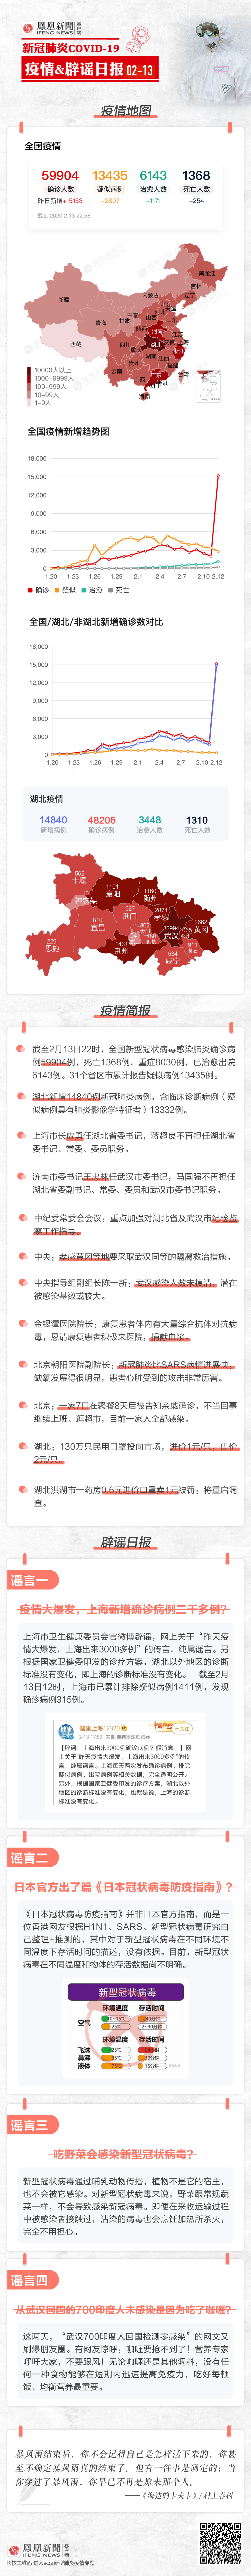 2月13日辟谣日报| 上海新增确诊病例3000多例？假的